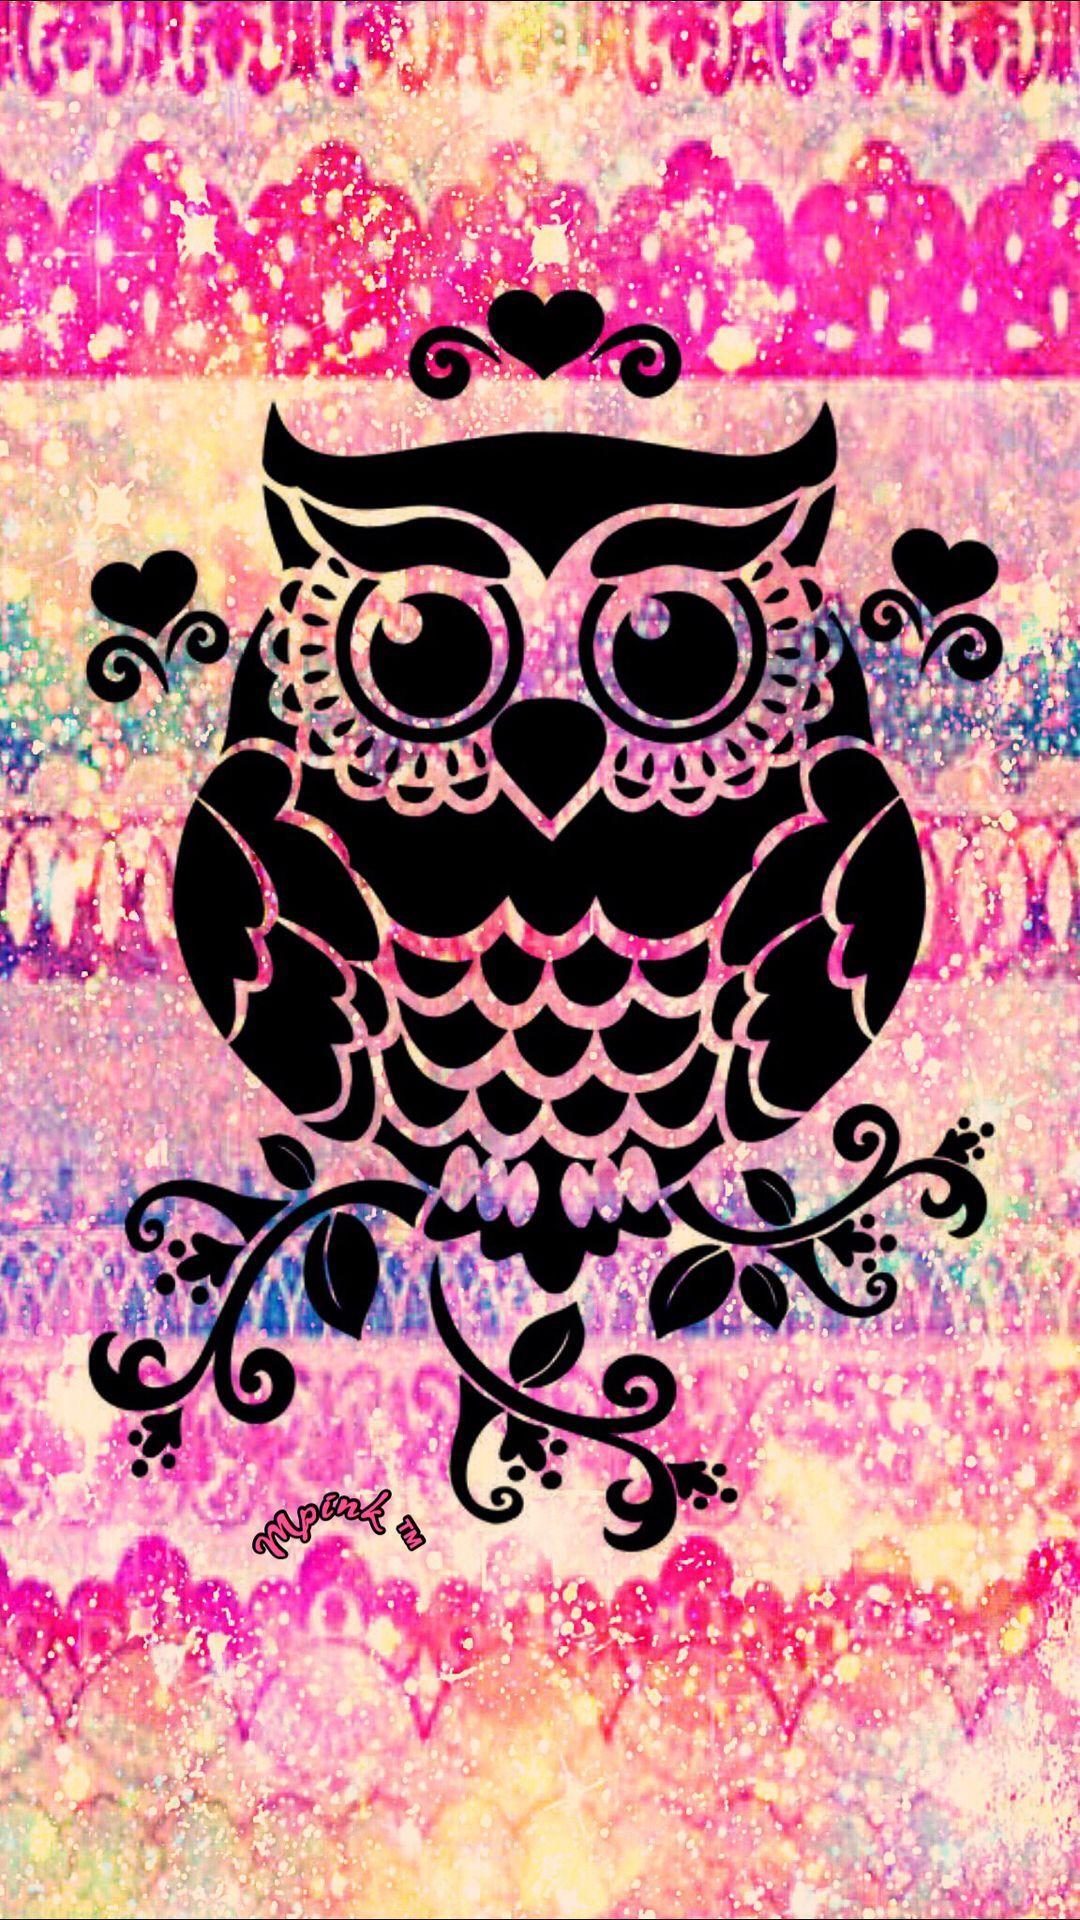 Heart Owl Galaxy Wallpaper #androidwallpaper #iphonewallpaper